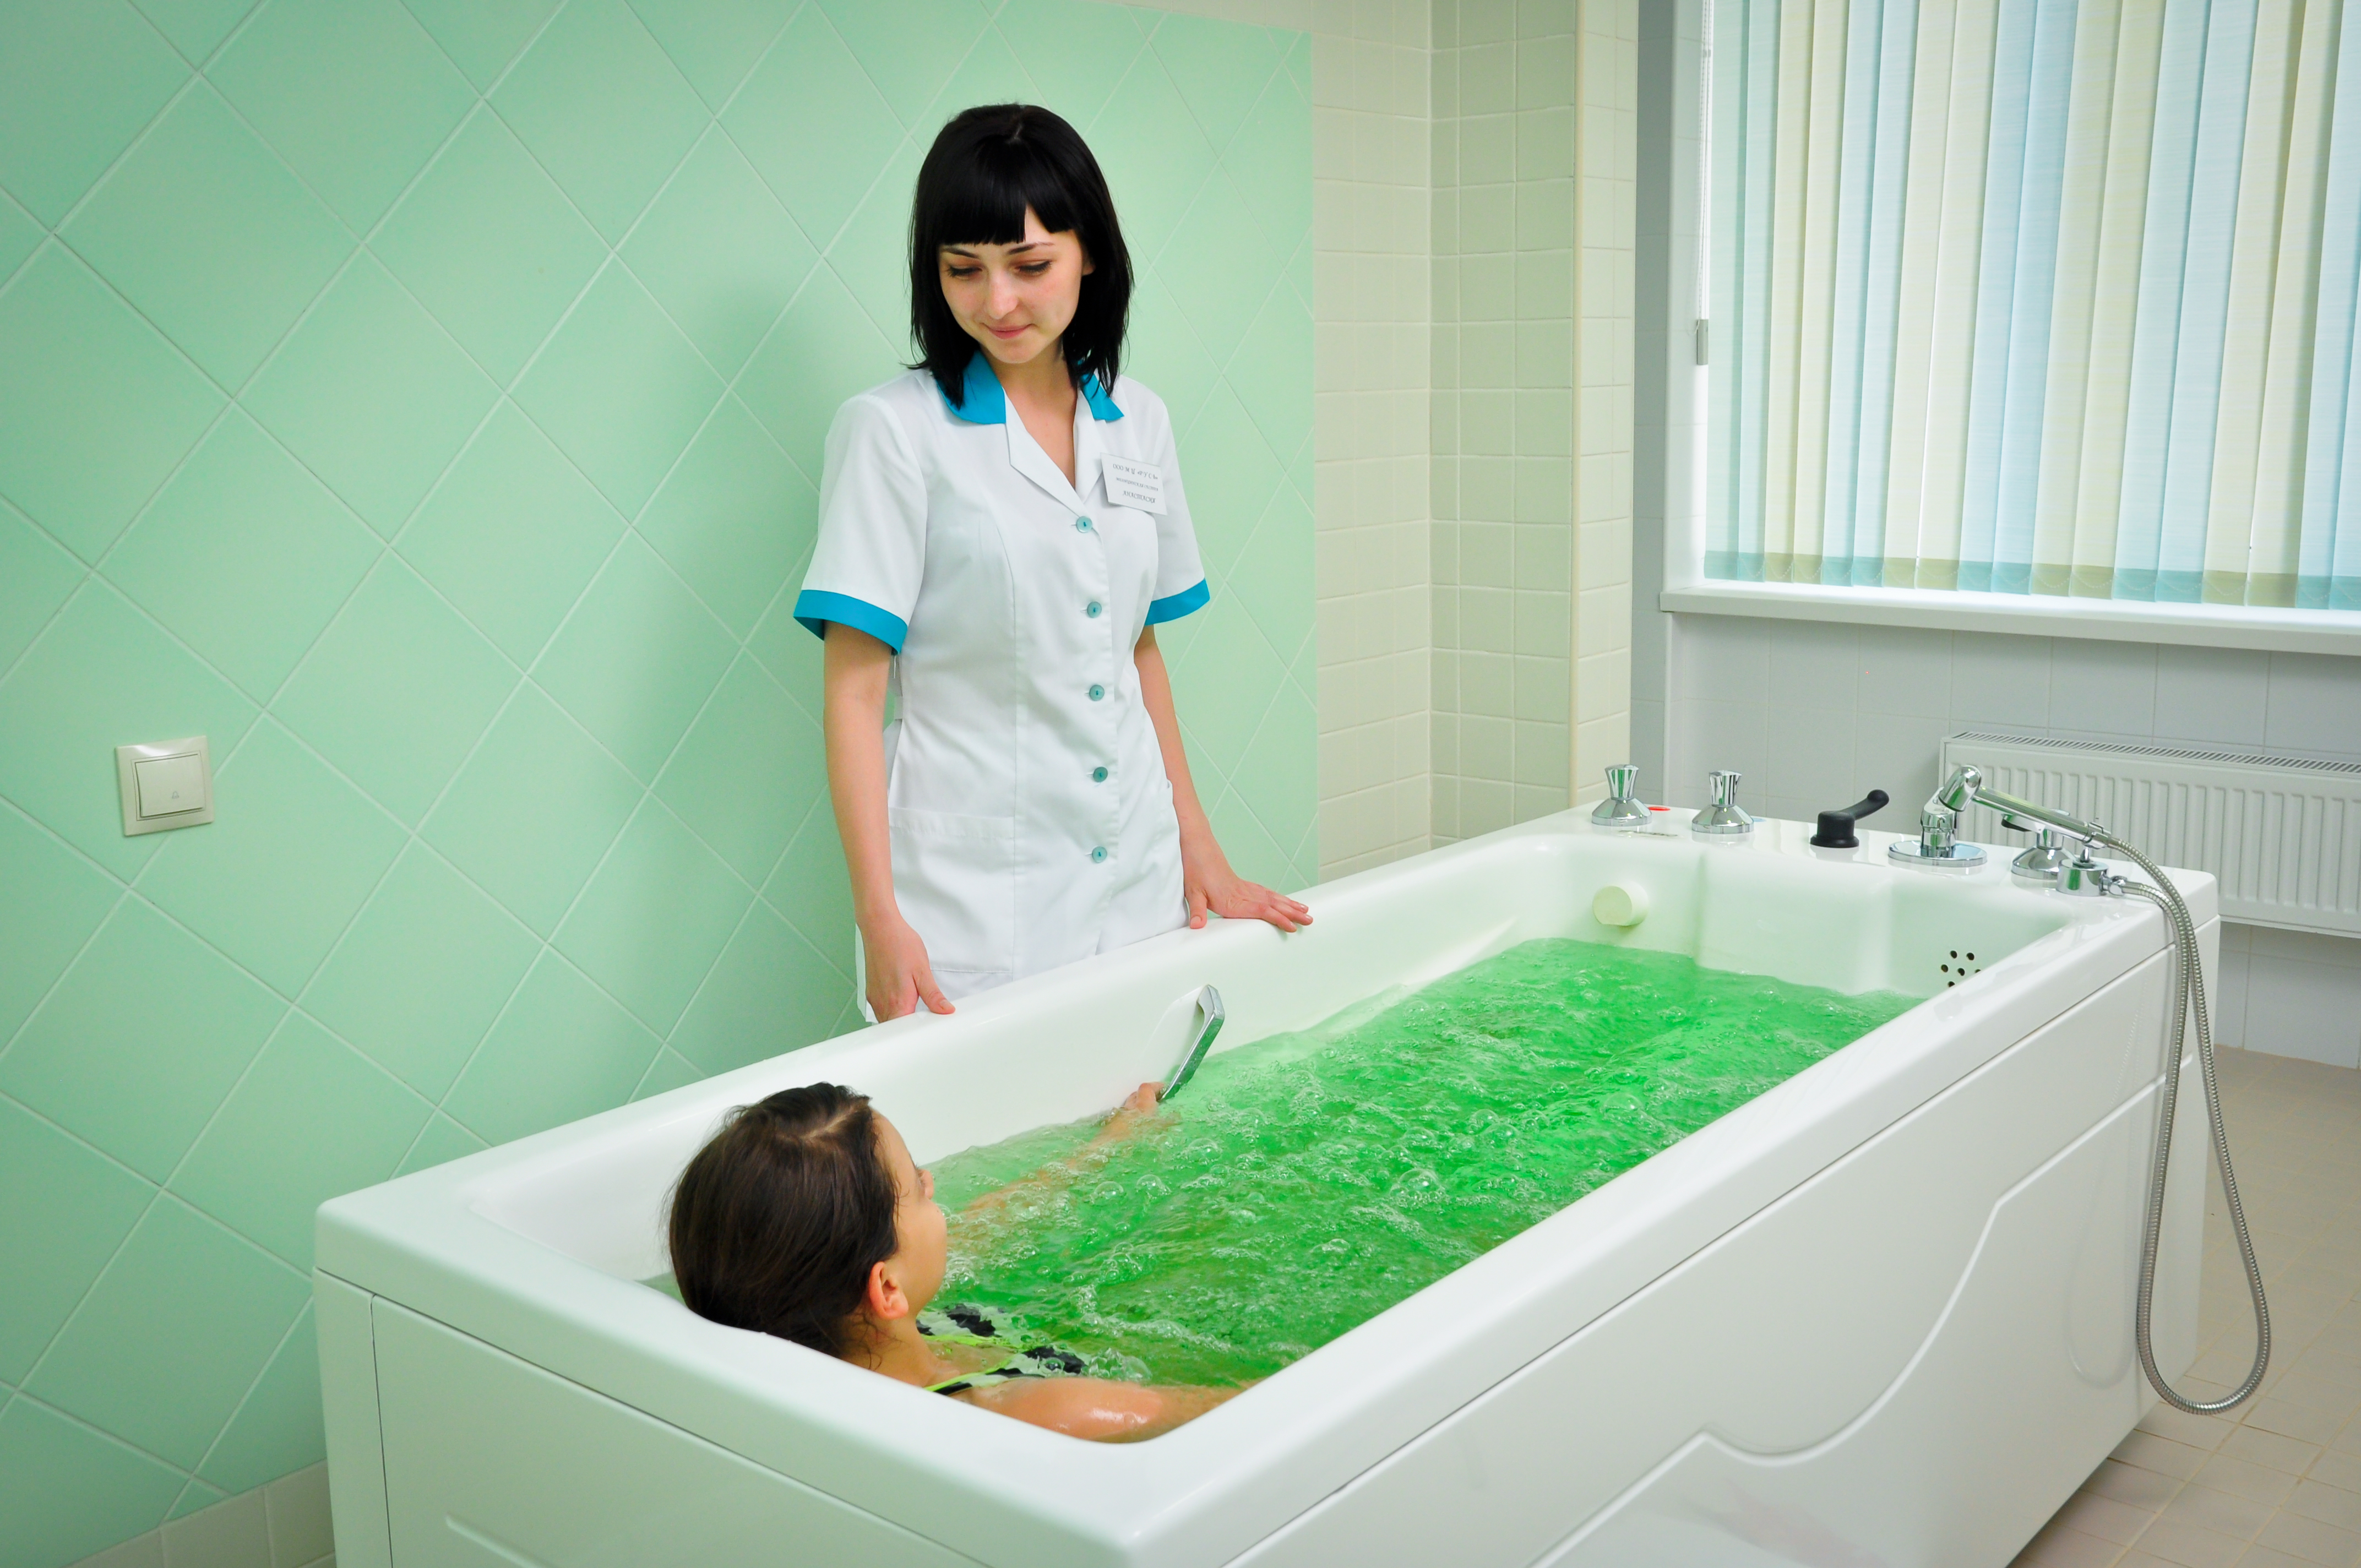 Радоновые ванны это. Ессентуки санатории радоновые ванны. Бальнеотерапия радоновые Минеральные воды. Минеральные воды радоновые ванны. Санаторий Русь Ессентуки лечебная база.